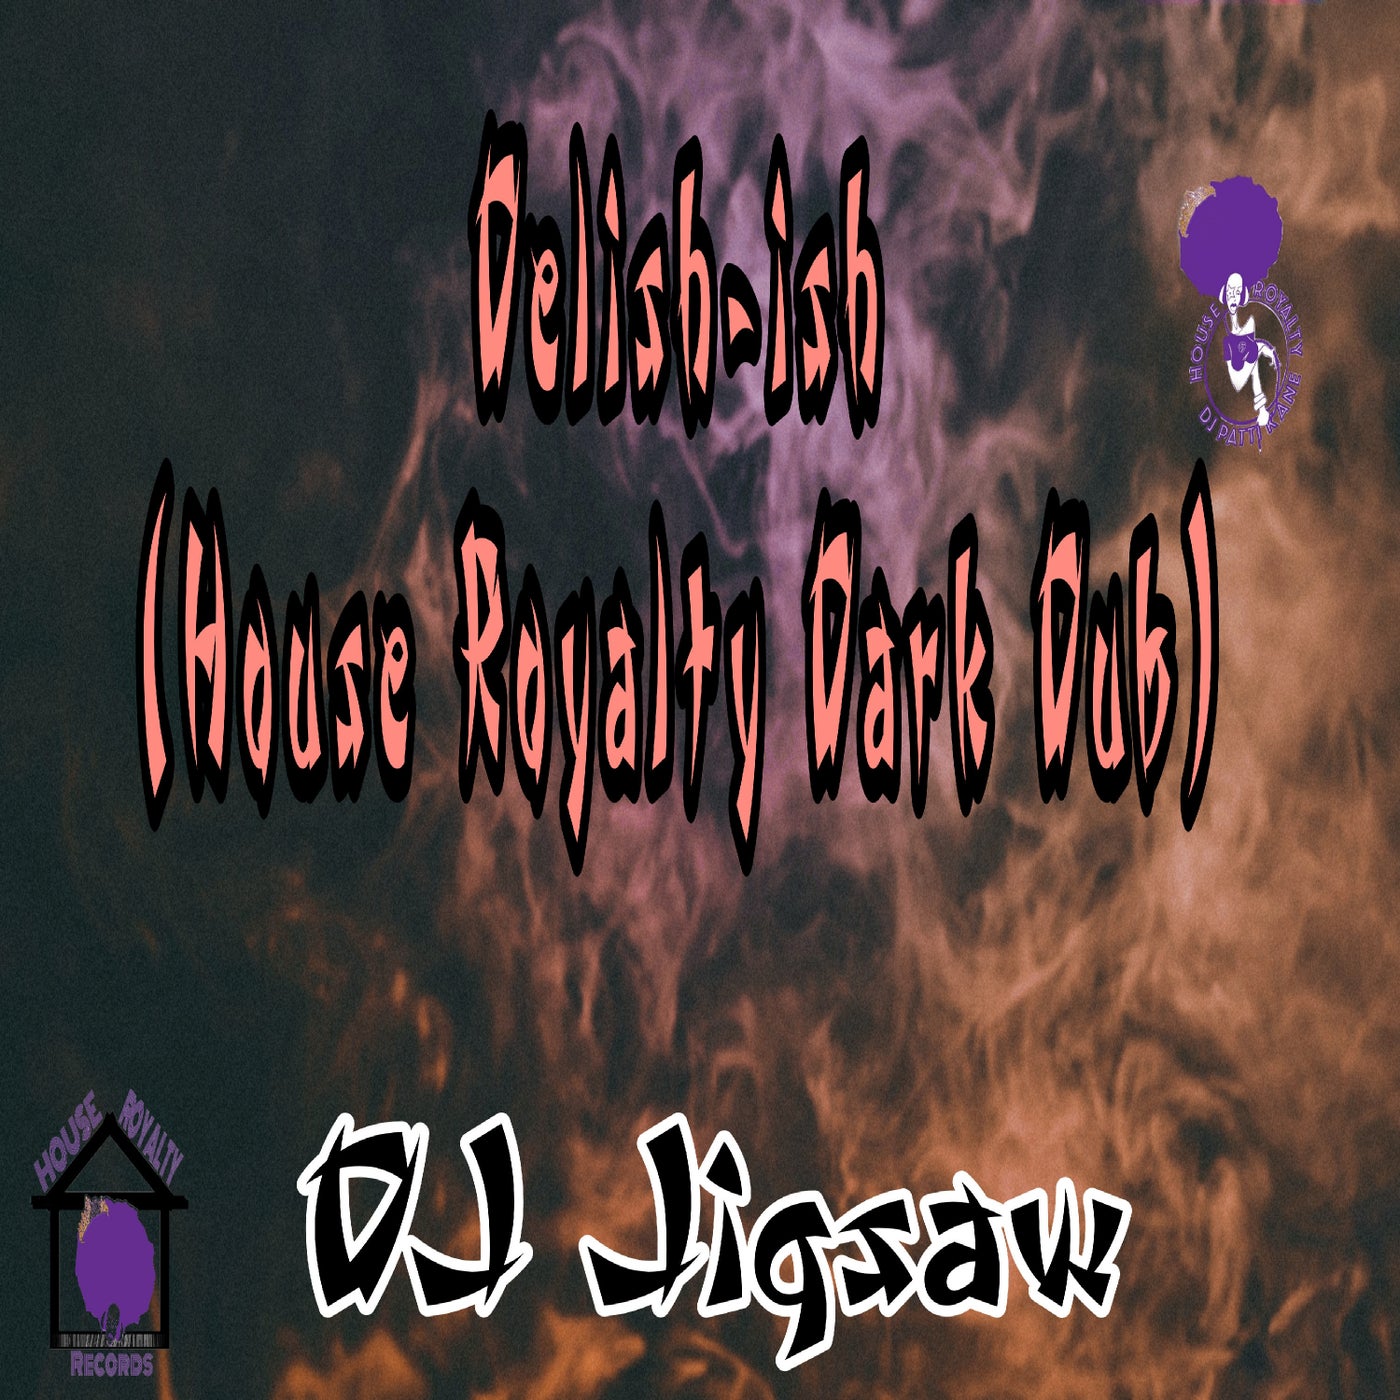 Delish-ish (House Royalty Dark Dub)